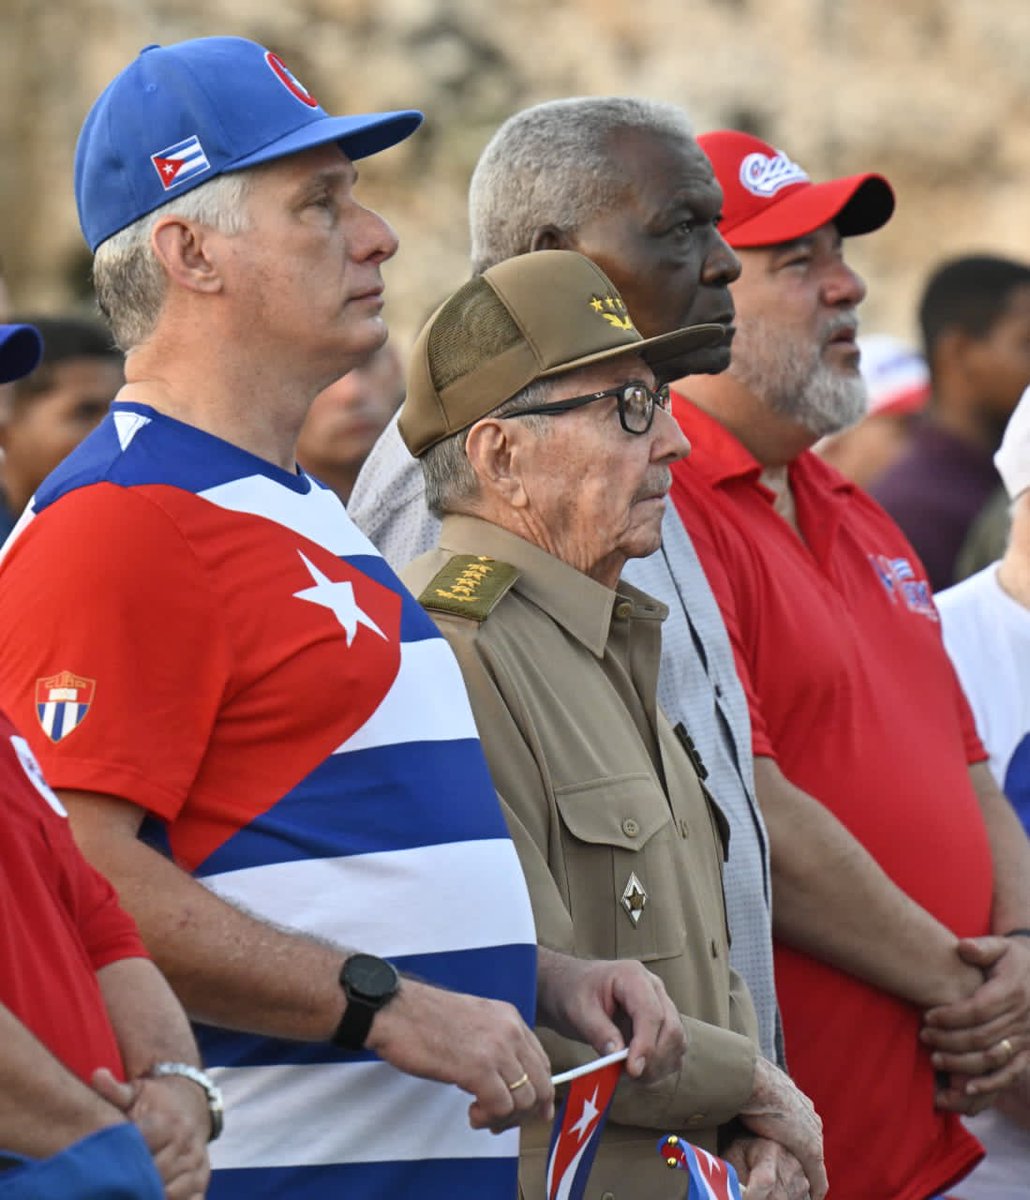 A los odiadores les deseo un feliz fin de semana. 🇨🇺
#Cuba   #1Mayo
#ALaPatriaManosYCorazón 
#MejorEsPosible 
#MejorSinBloqueo 
#SaldremosAdelante
#FidelPorSiempre